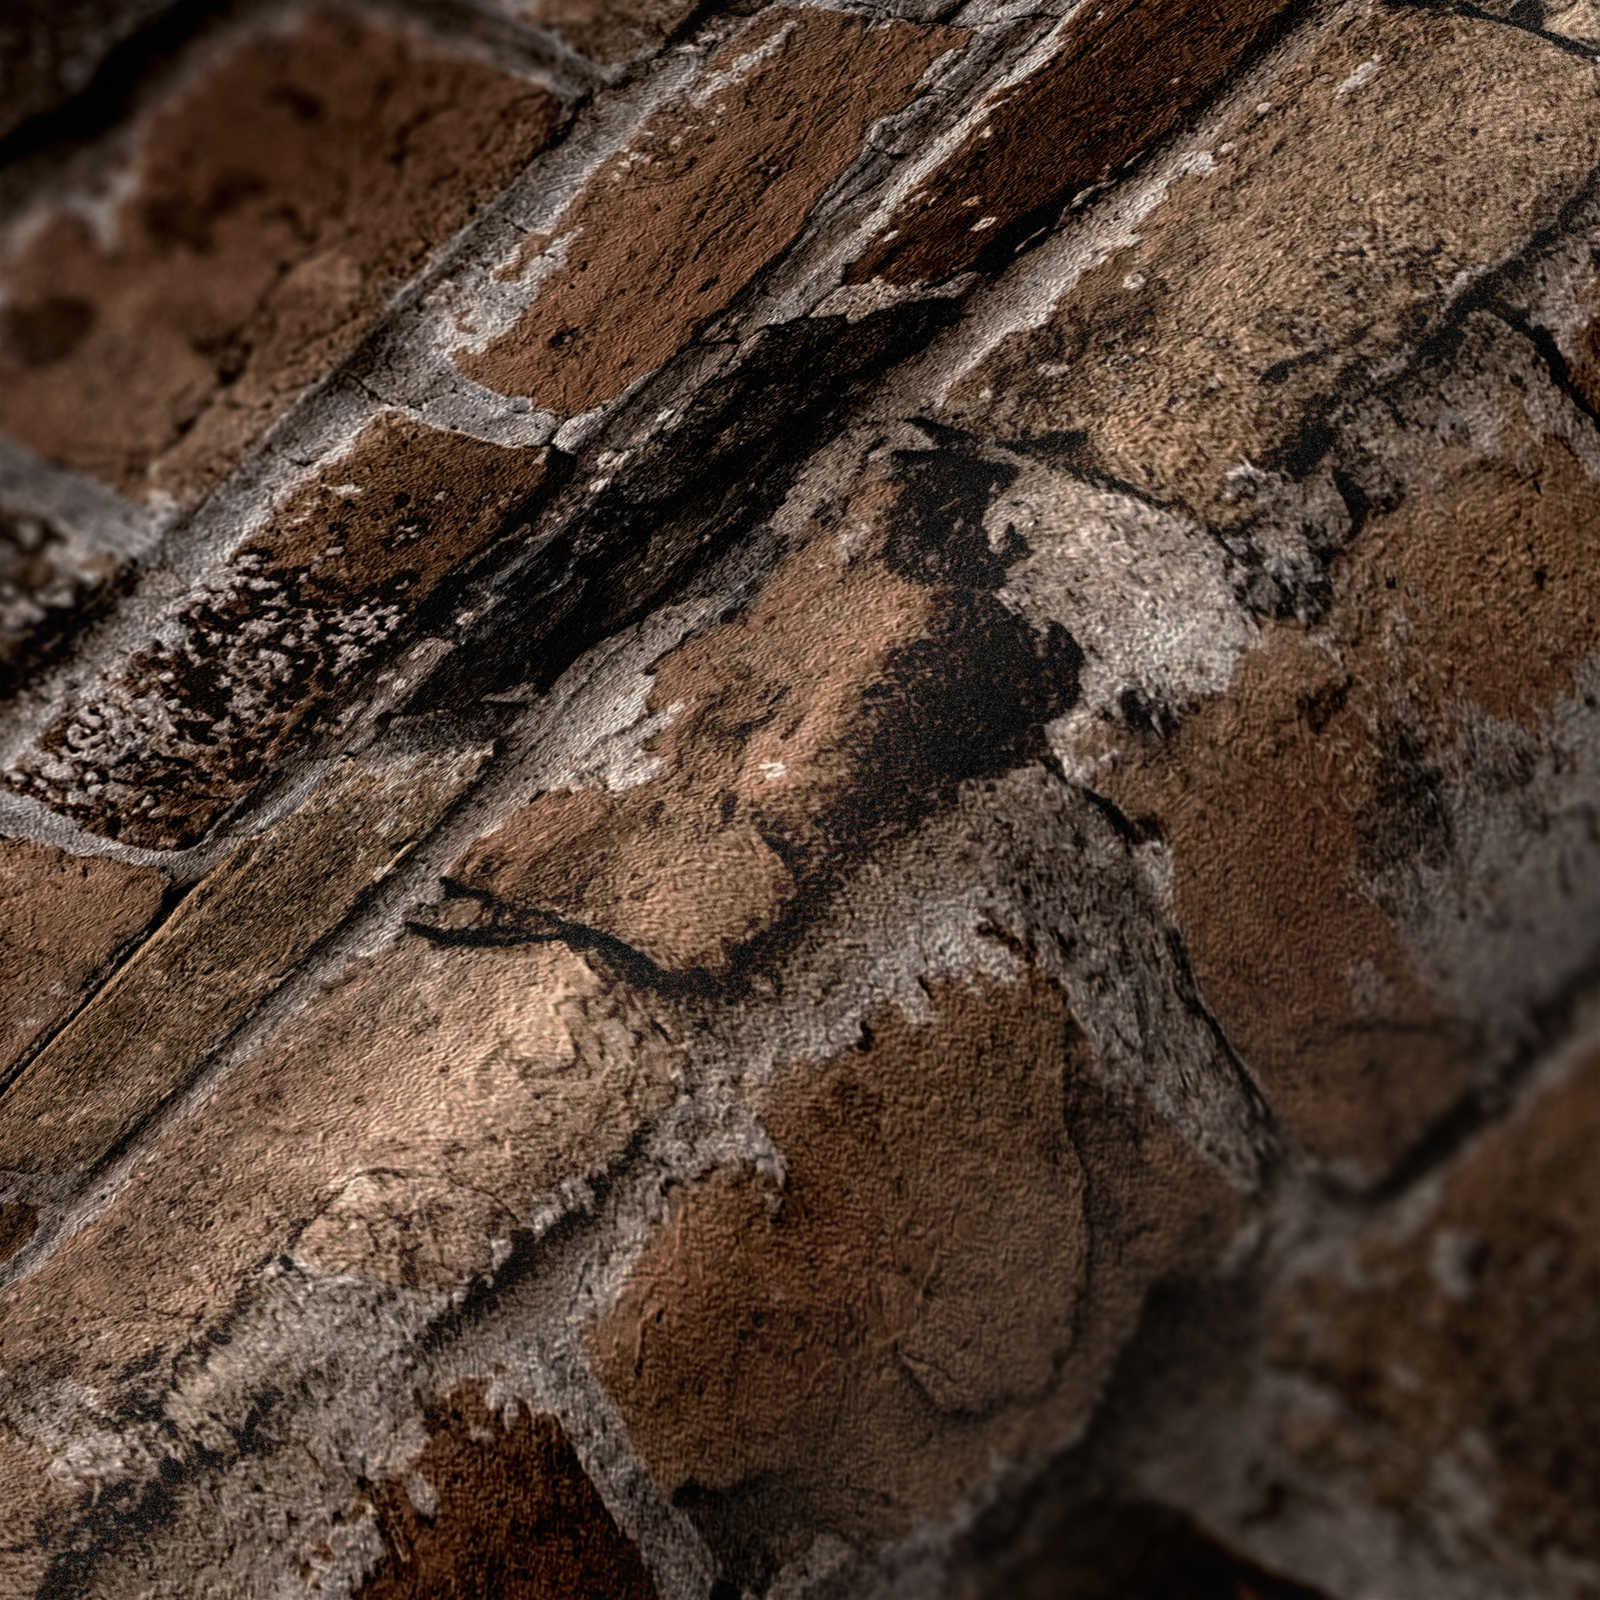             Papel pintado no tejido símil piedra con diseño de ladrillo - marrón
        